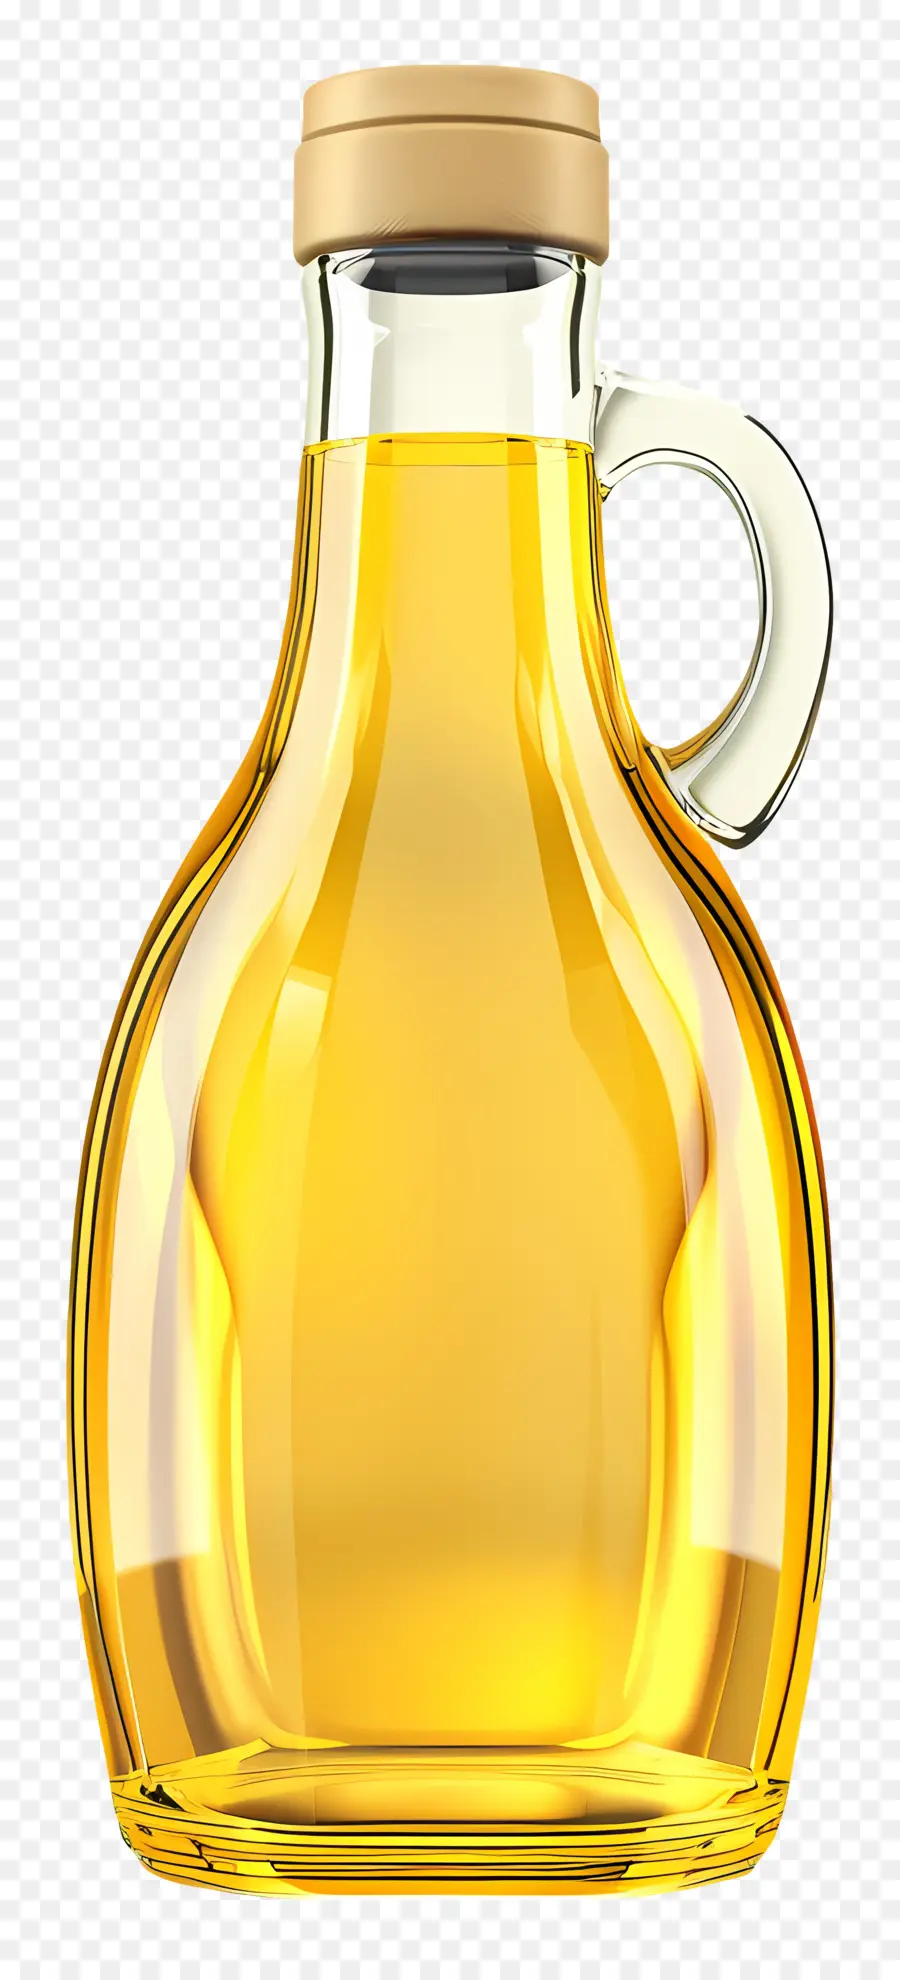 vetro rotto - Bottiglia di vetro rotta di olio versato